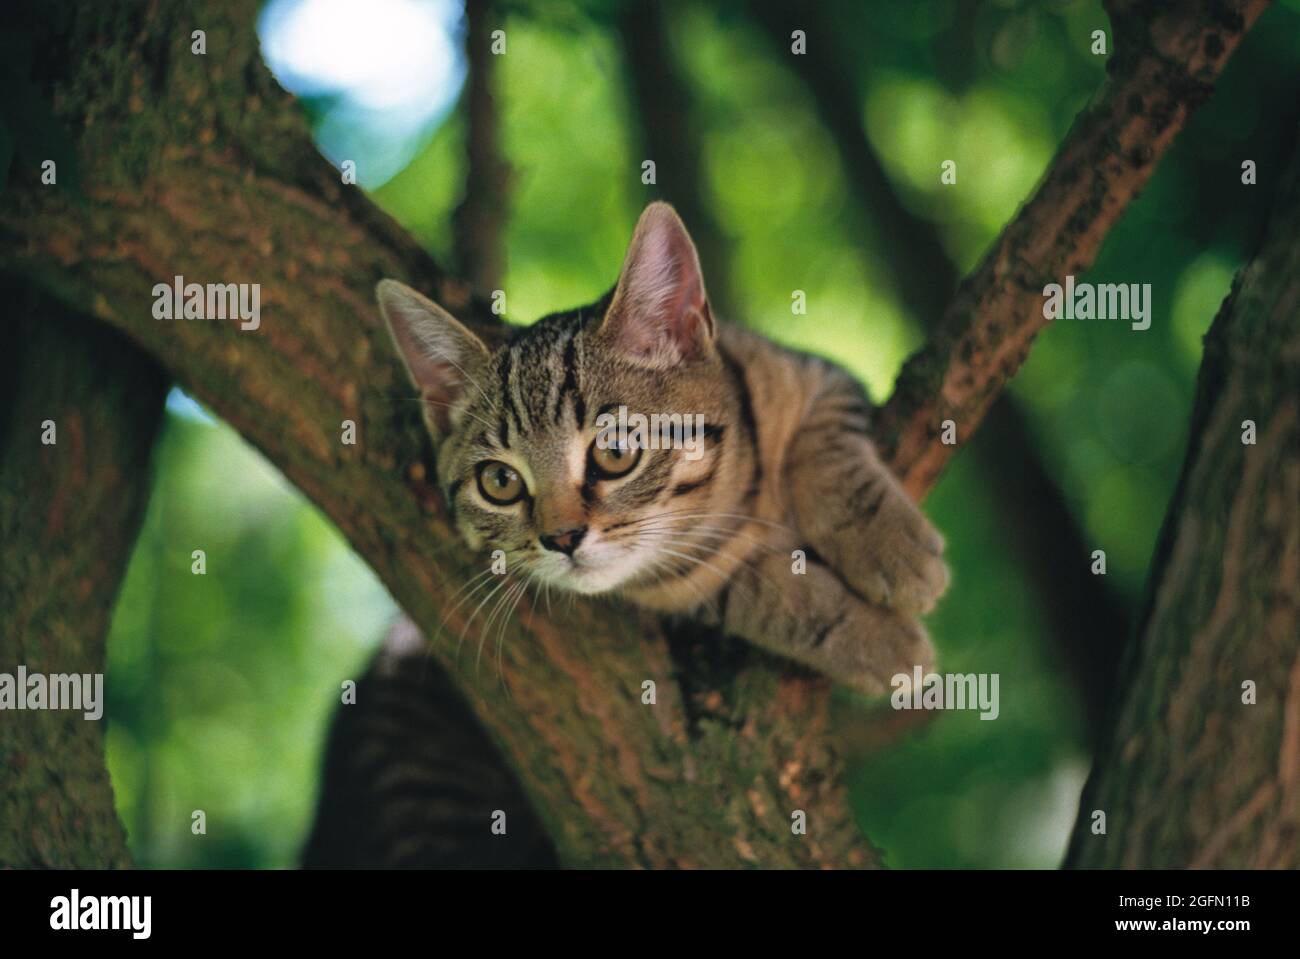 Animales. Tabby Cat al aire libre encima de un árbol. Foto de stock